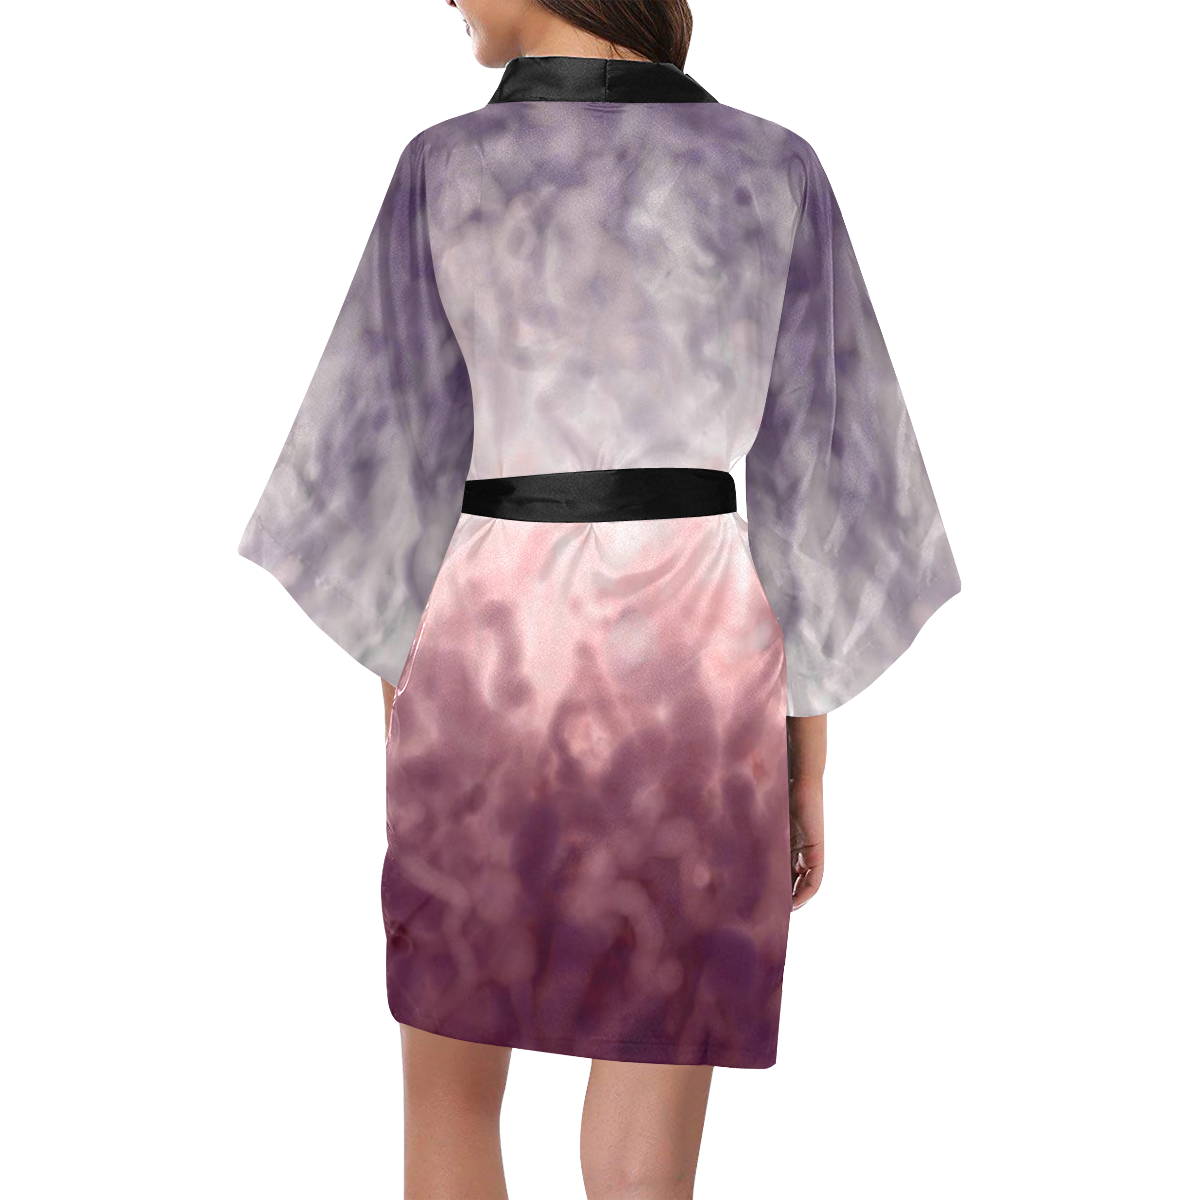 Vivid Dreams Kimono Robe